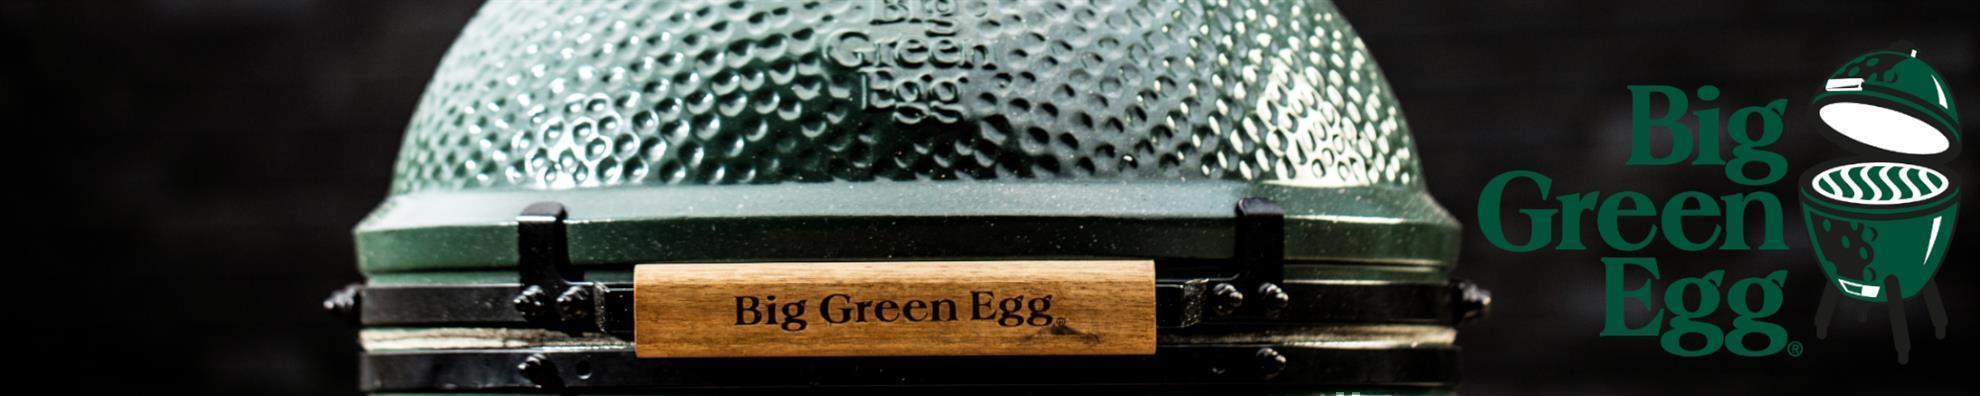 Big Green Egg - Holzkohle-Grillanzünder